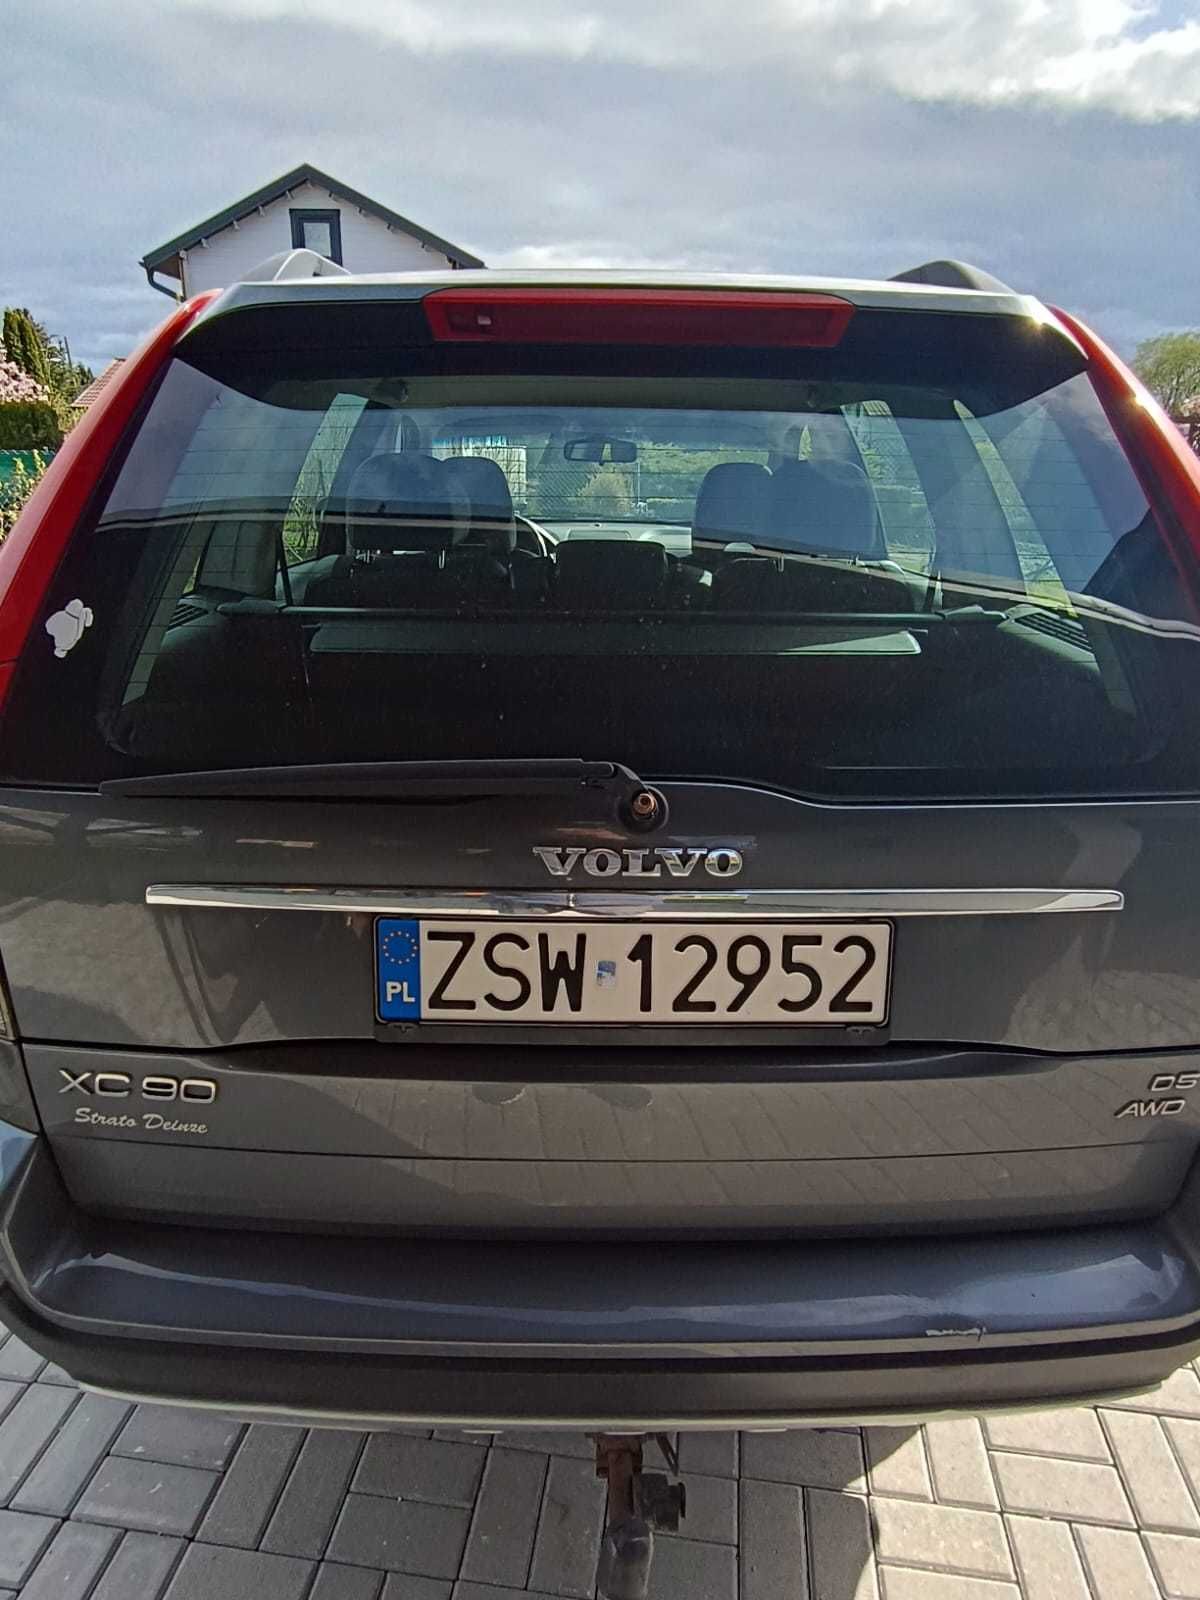 2007 Volvo xc 90 186km 2.4 diesel awd d5 cena do negocjacji